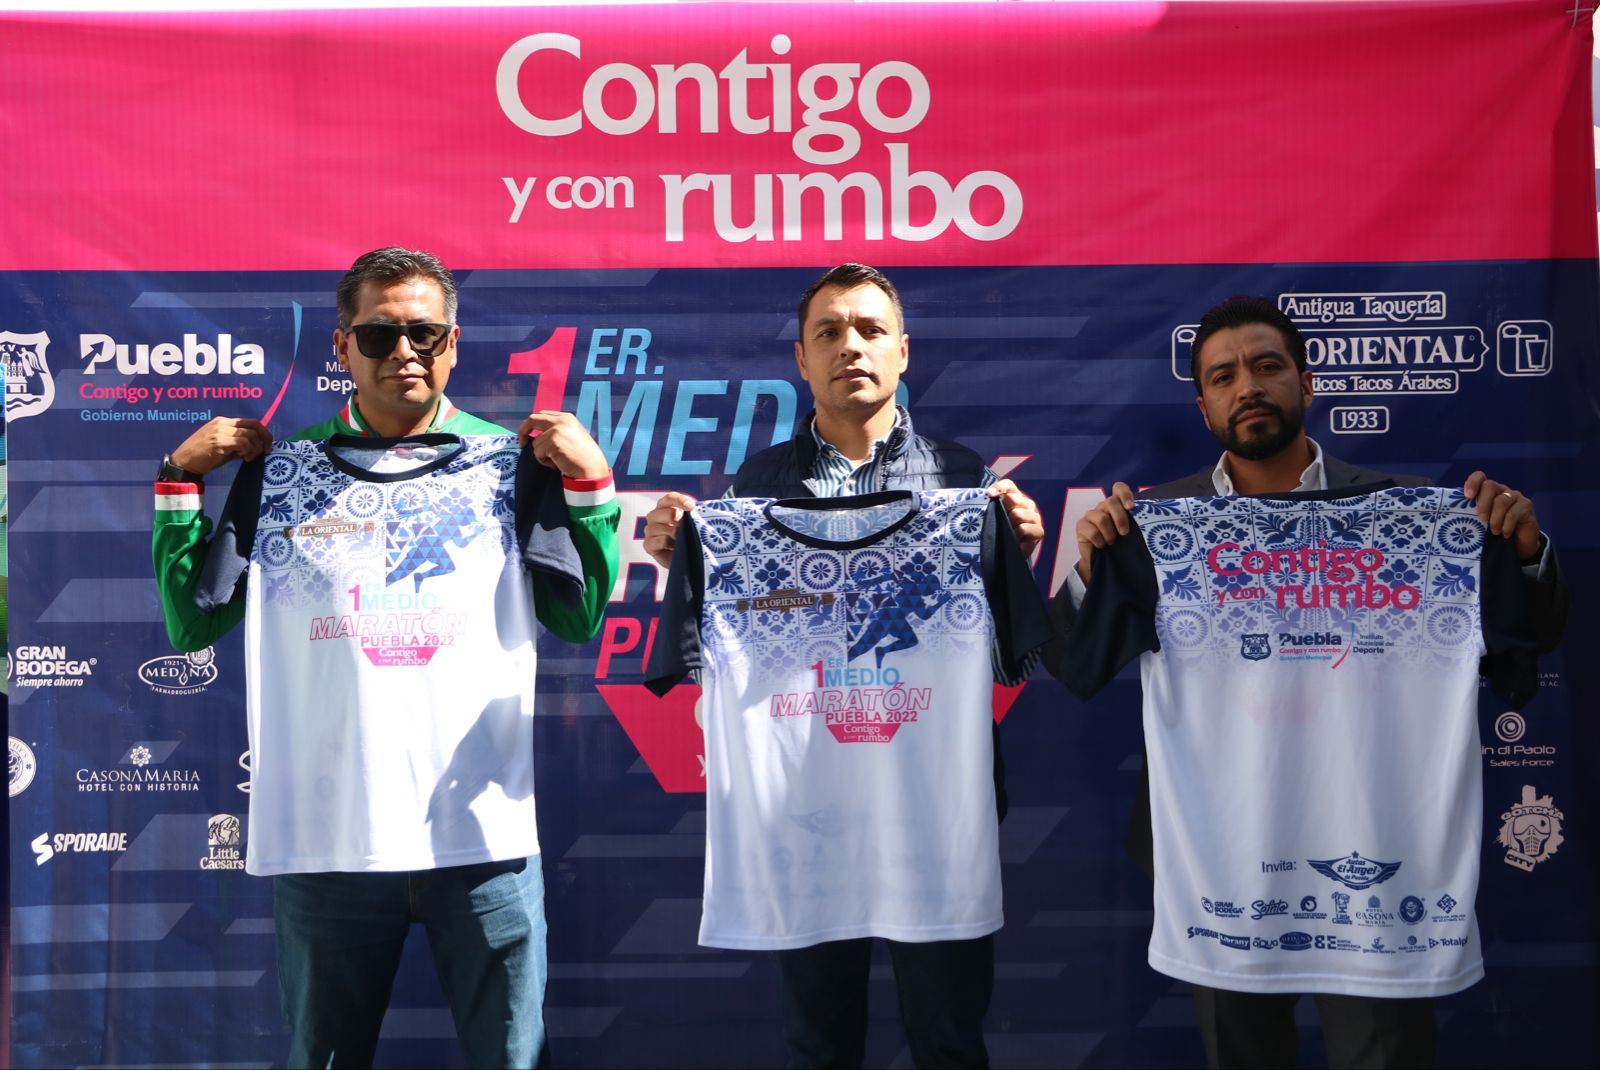 Ayuntamiento de Puebla invita a la población a participar en el 1er Medio Maratón